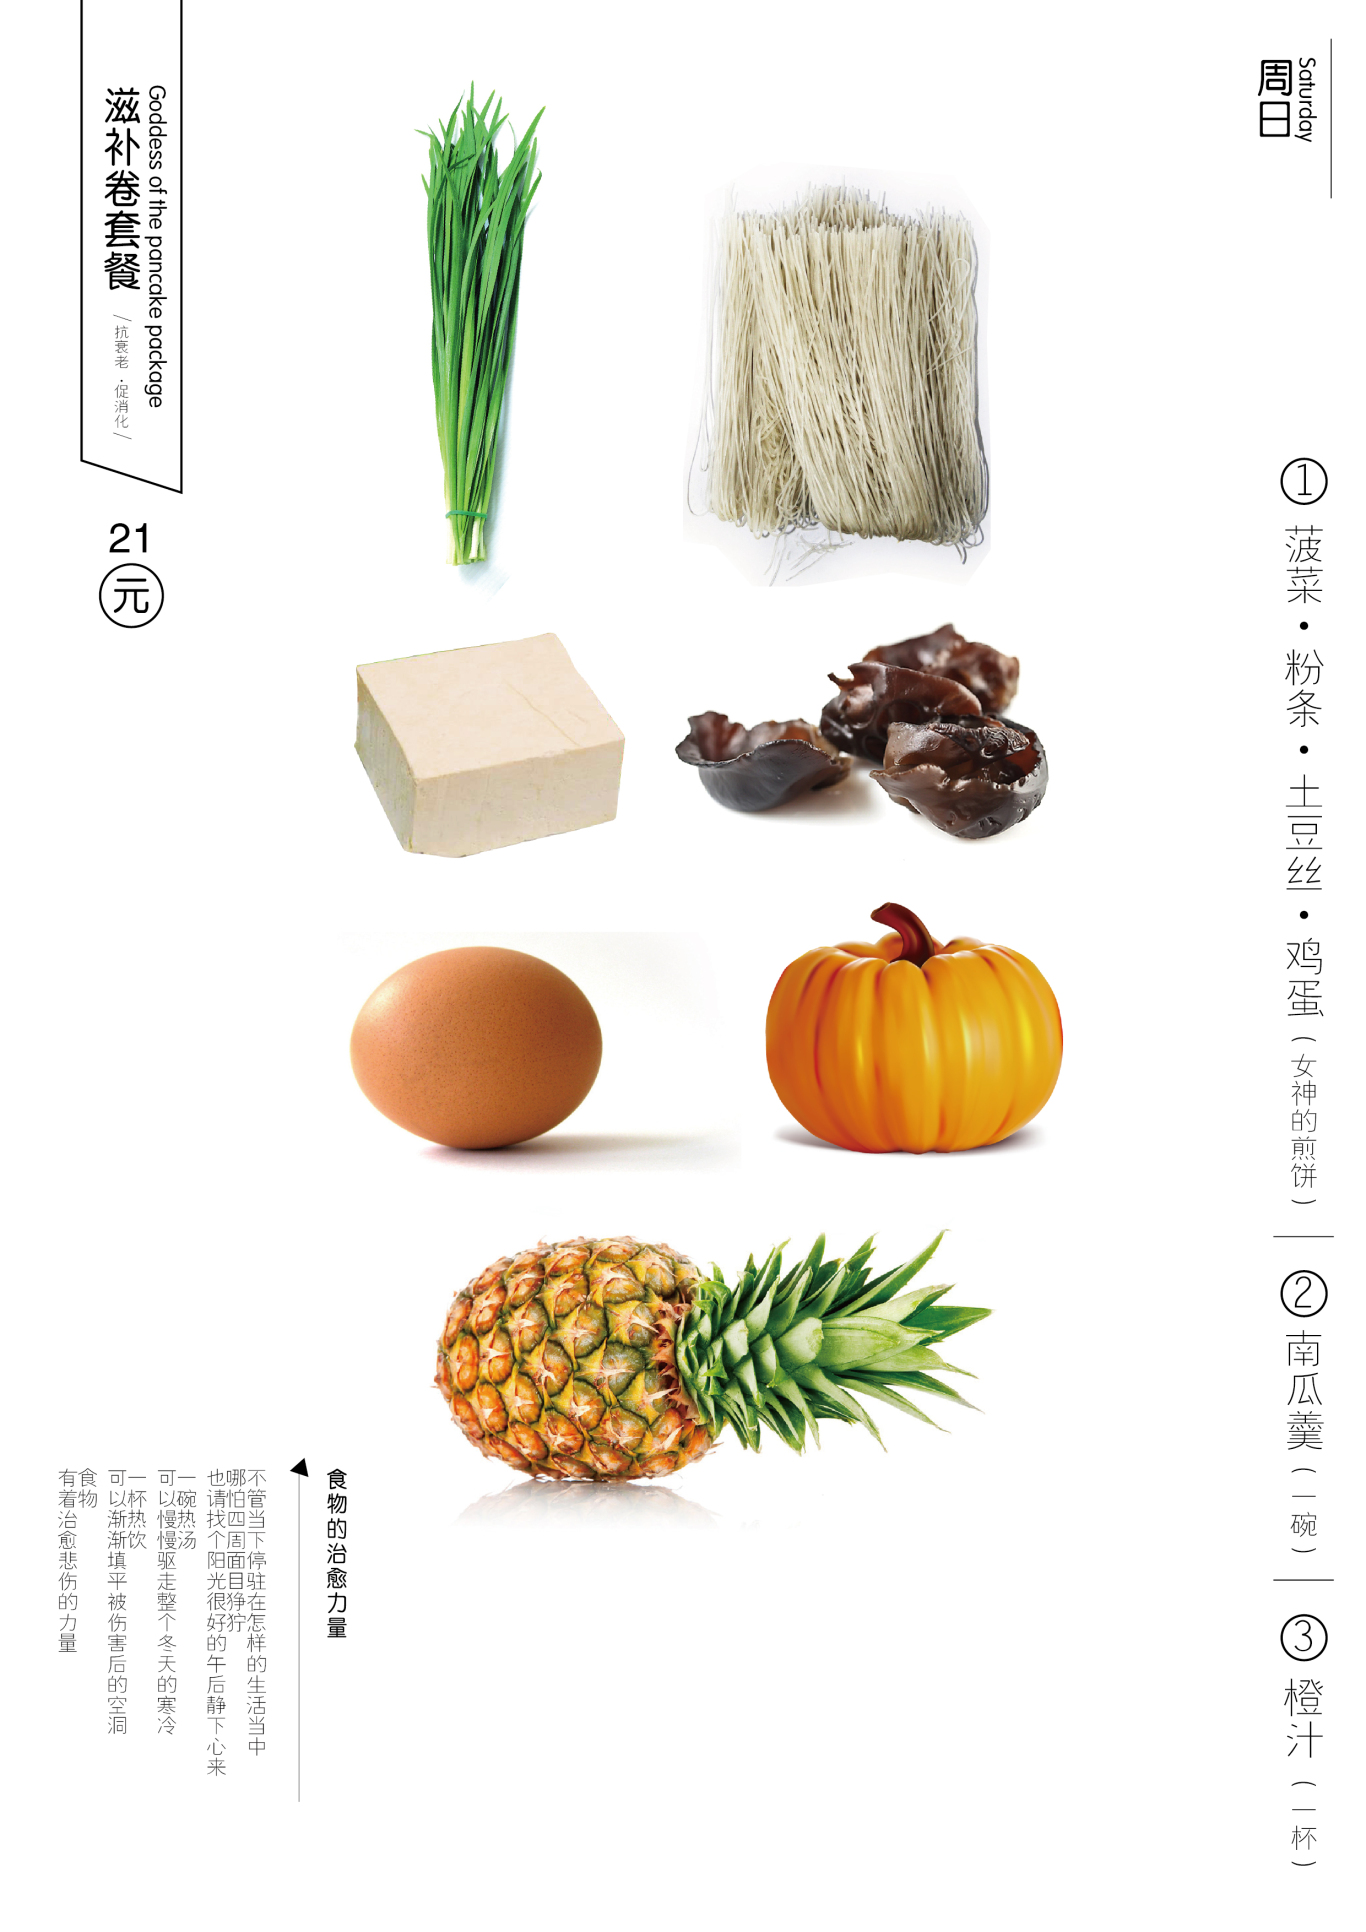 菜菜卷包装菜单设计图14